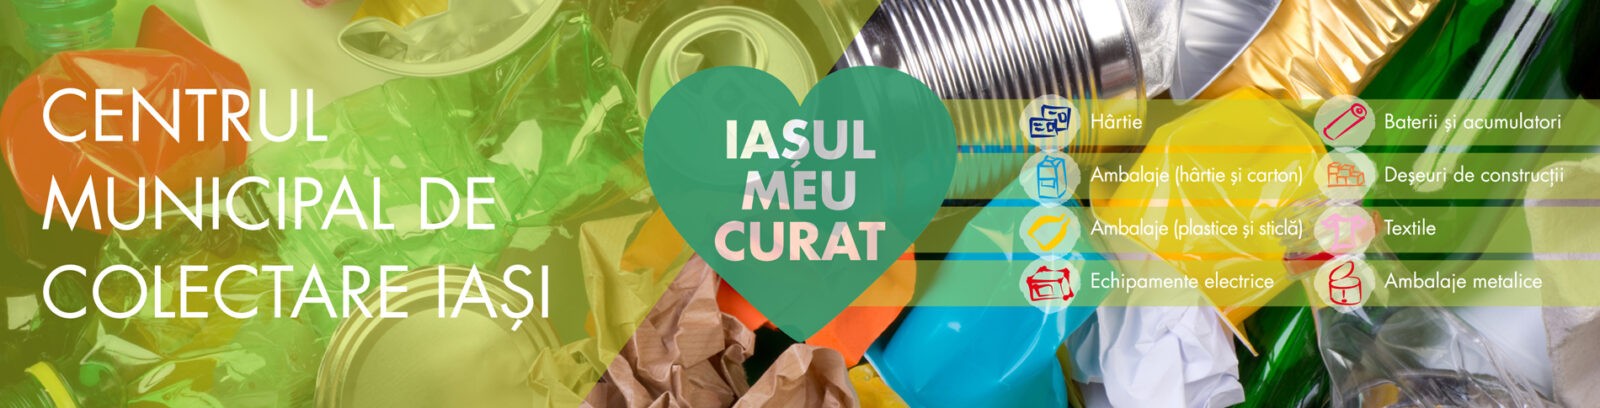 Din 17 februarie, elevii ieșeni află despre Centrul Municipal de Colectare Iași